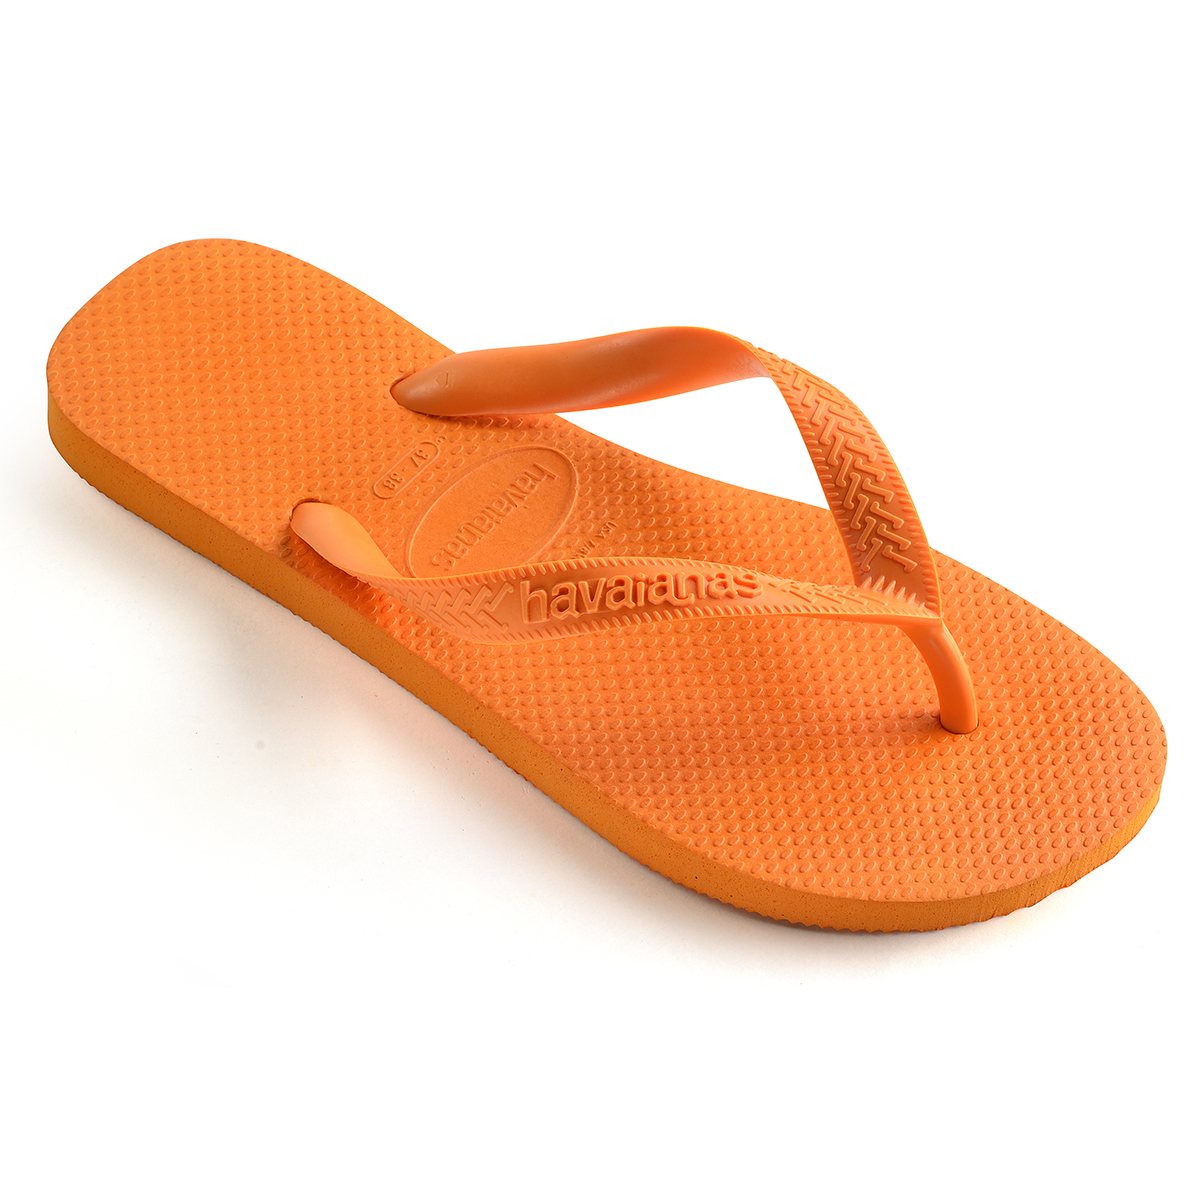 Havaianas Top Unisex Erwachsene Sandalen Zehentrenner Badelatschen 4000029 Orange